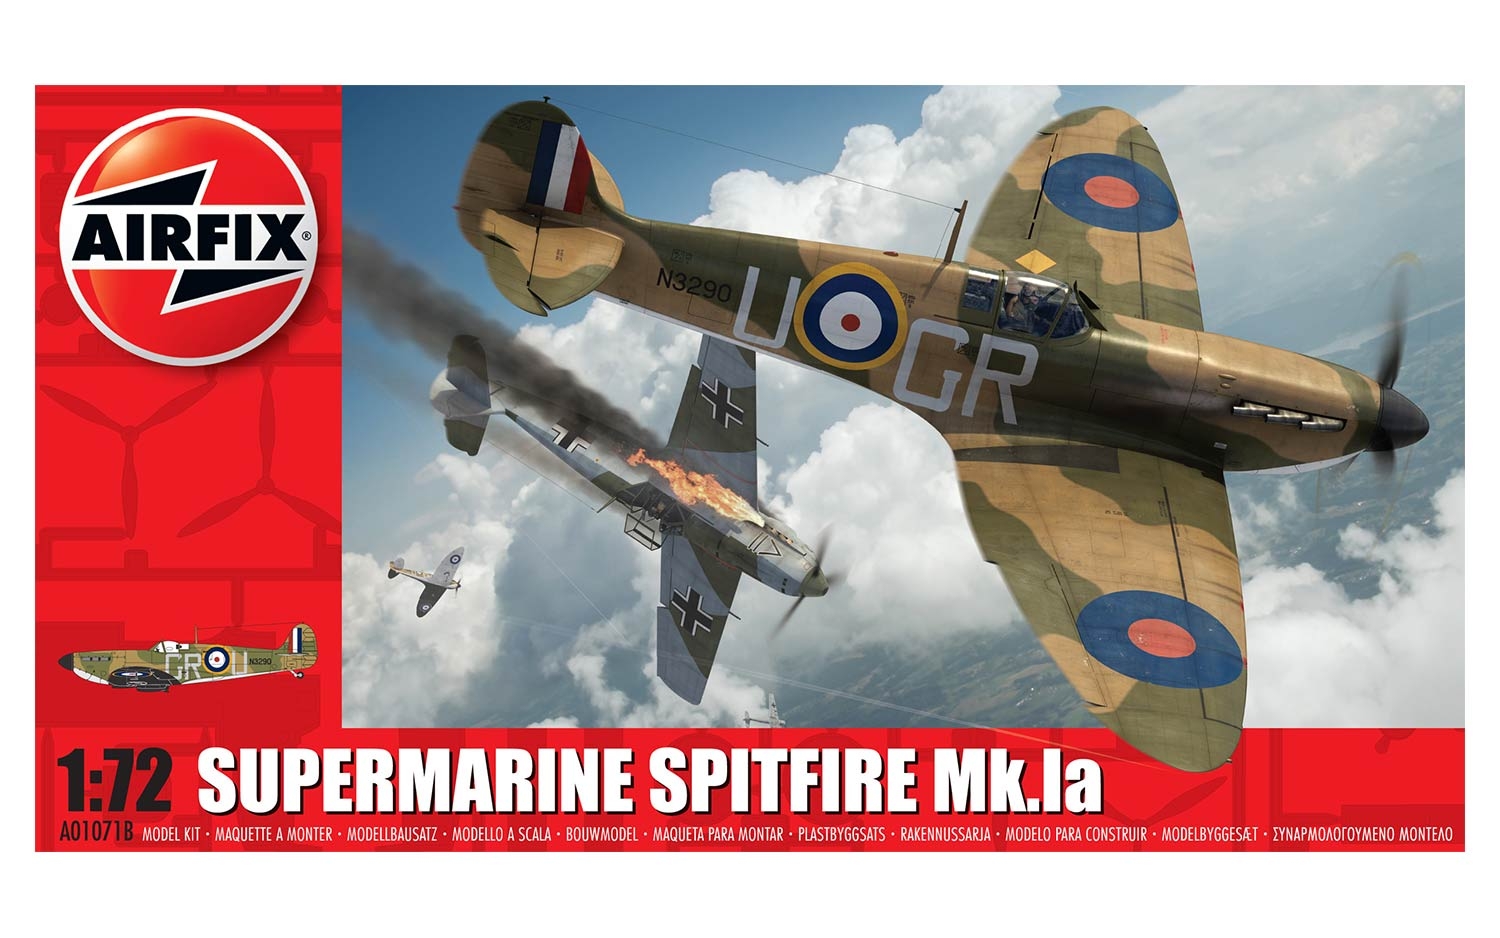 AIRFIX A55100 Supermarine Spitfire Mk.1a Aircraft 1/72 Model Kit Starter Set NEW 